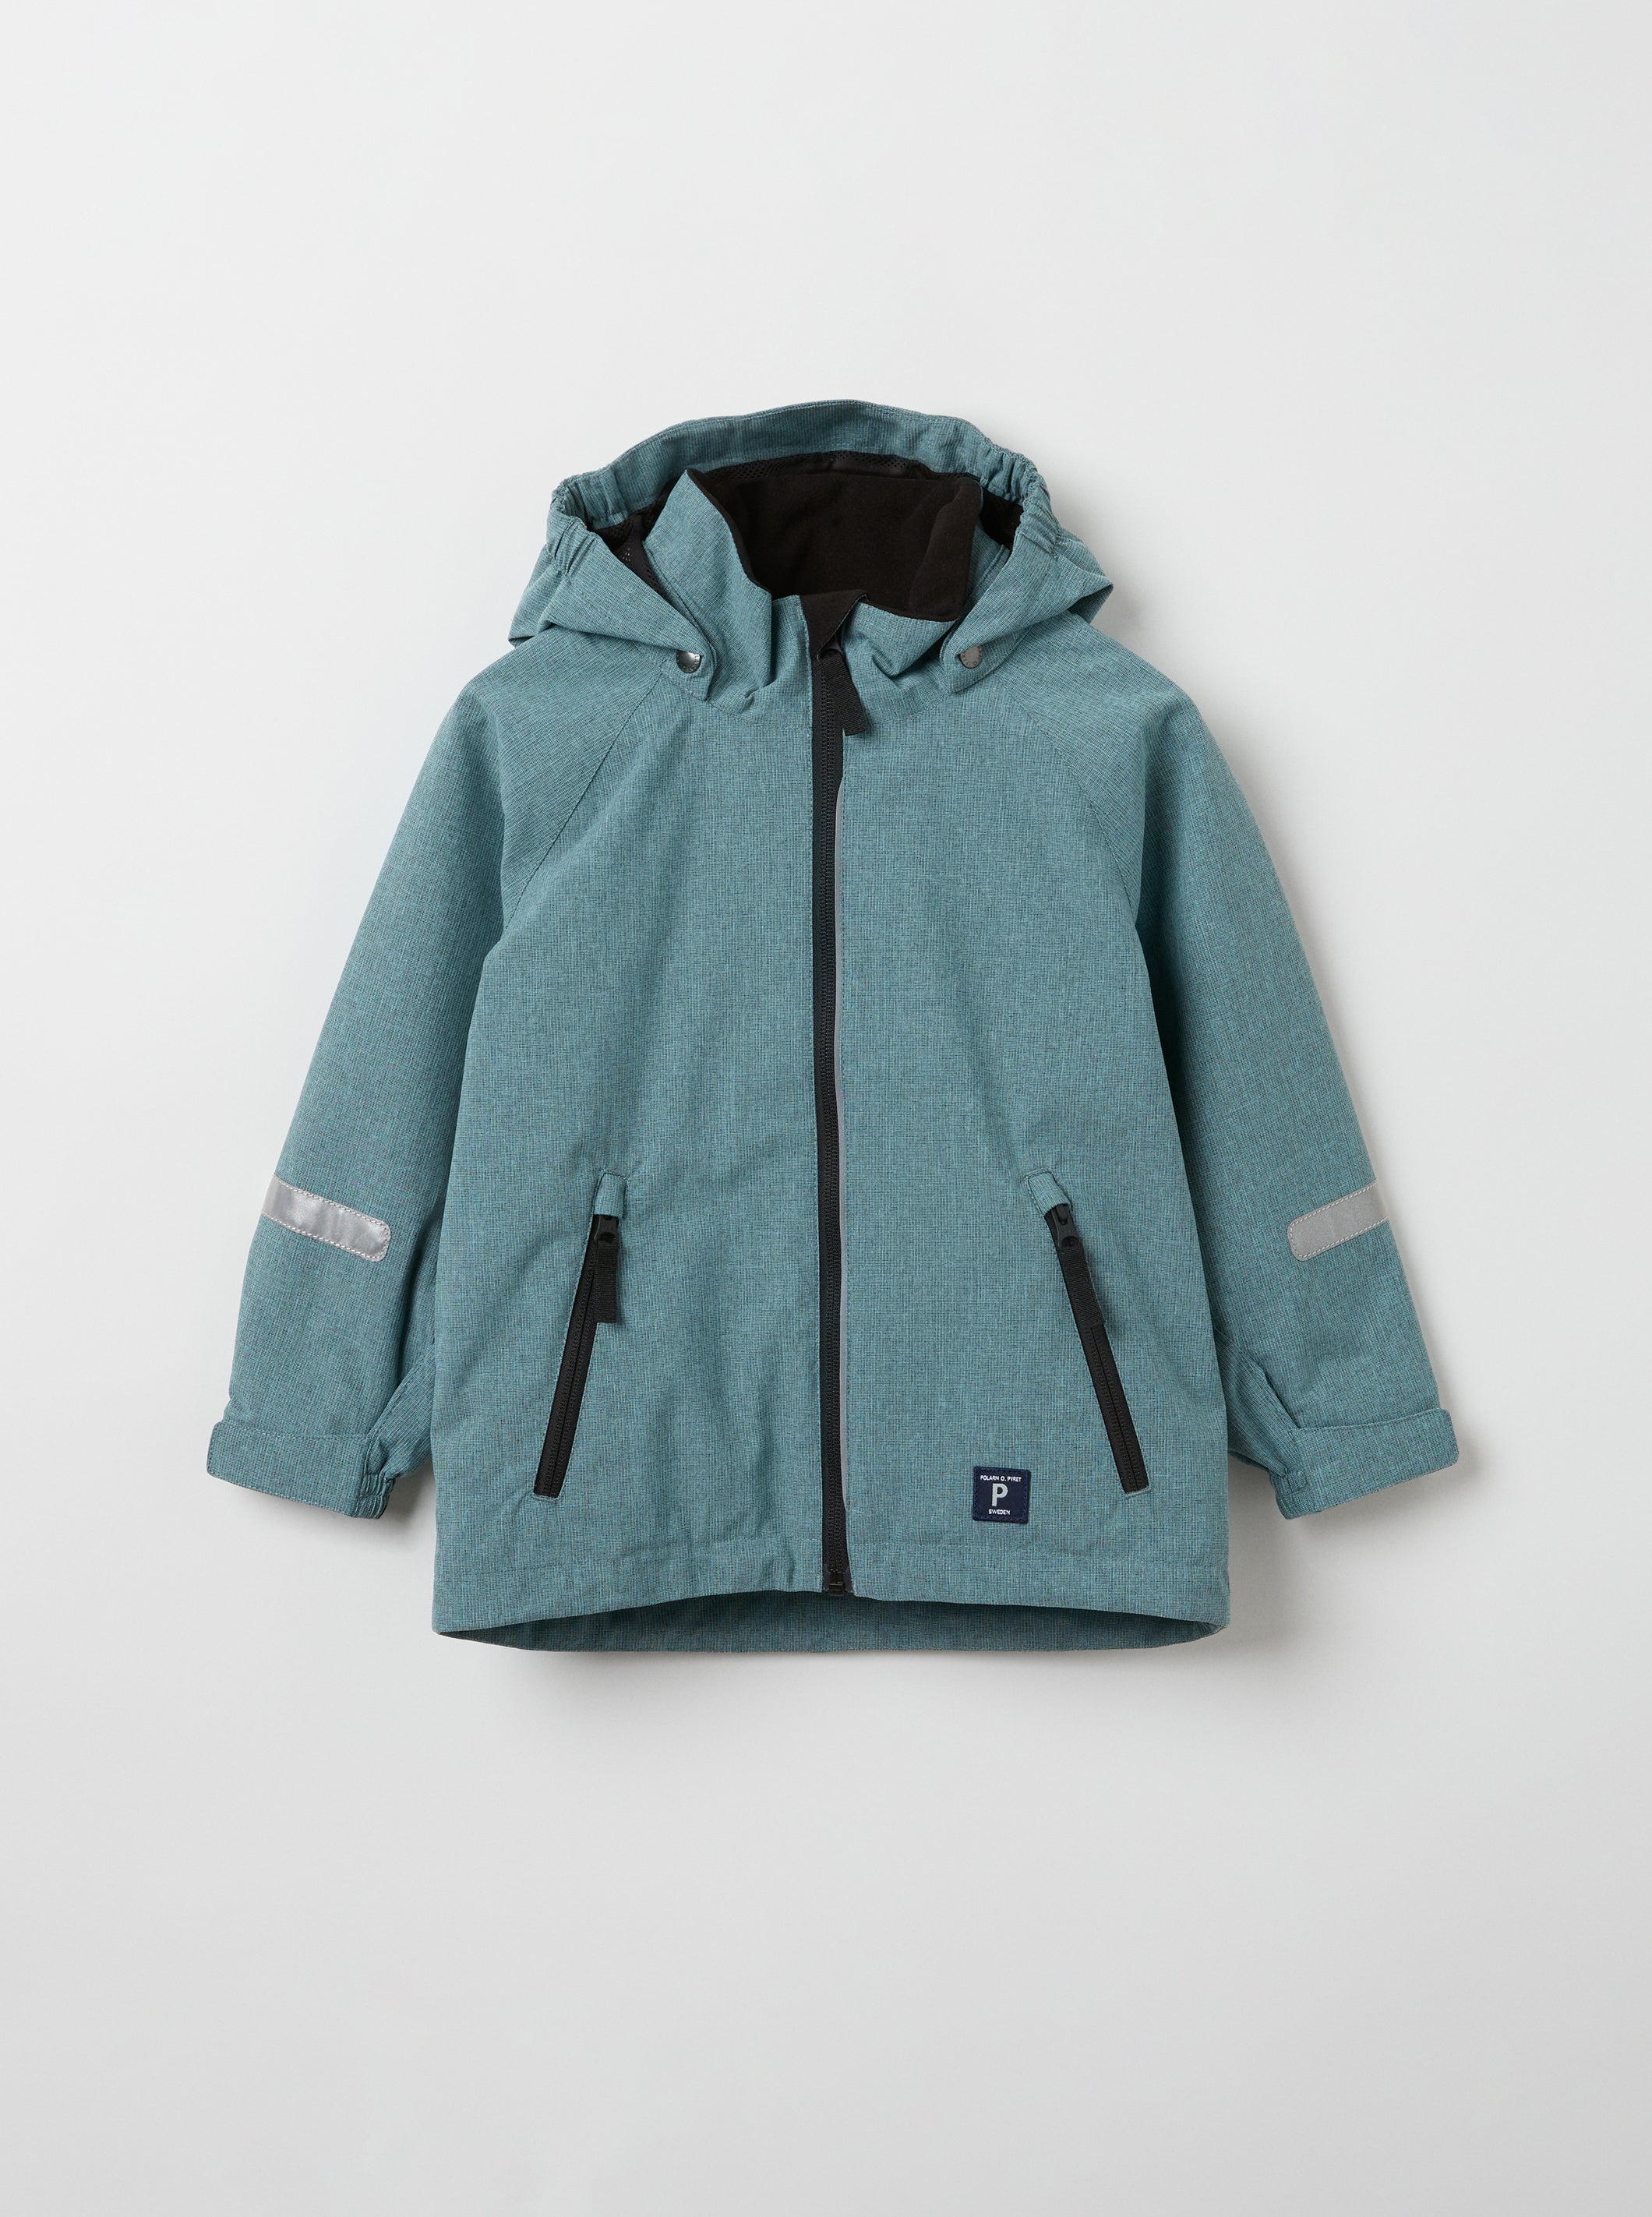 Turquoise Kids Shell Jacket | Polarn O. Pyret UK